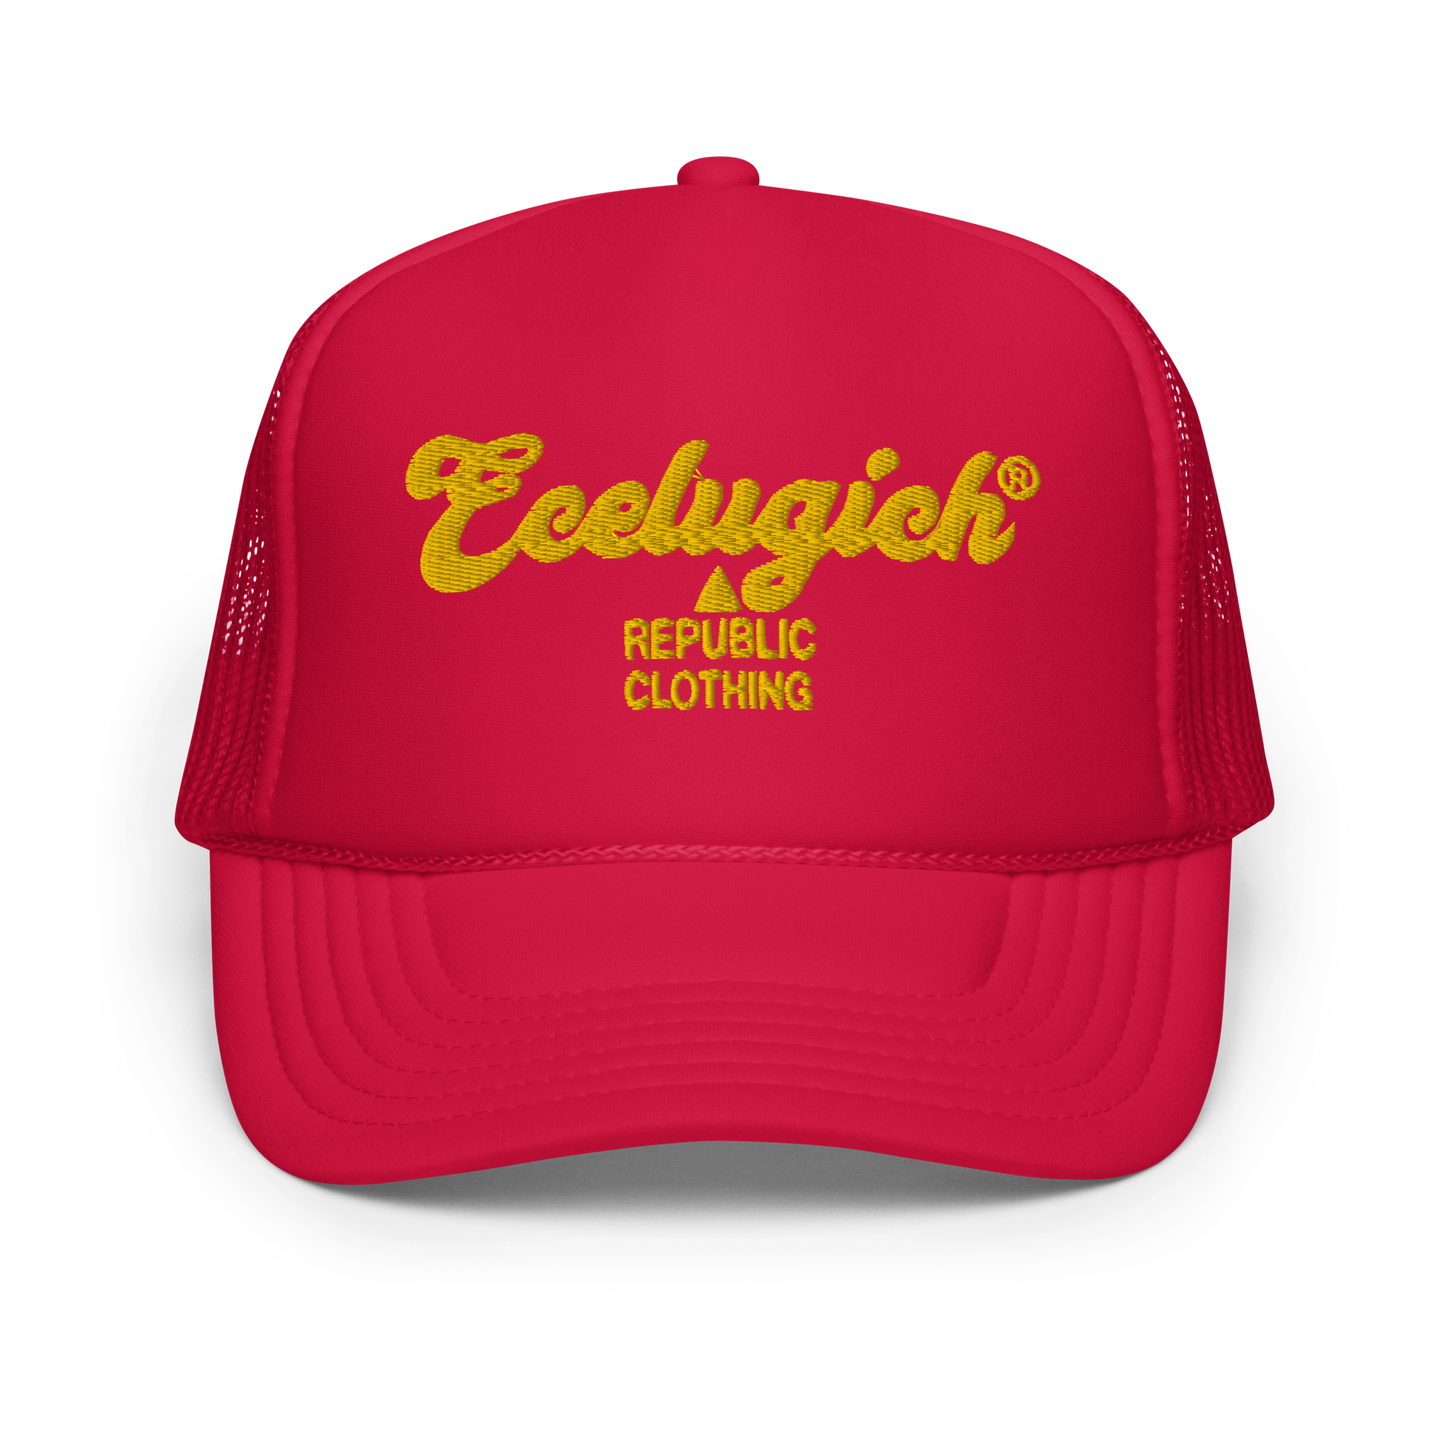 Ecelugich Foam trucker hat